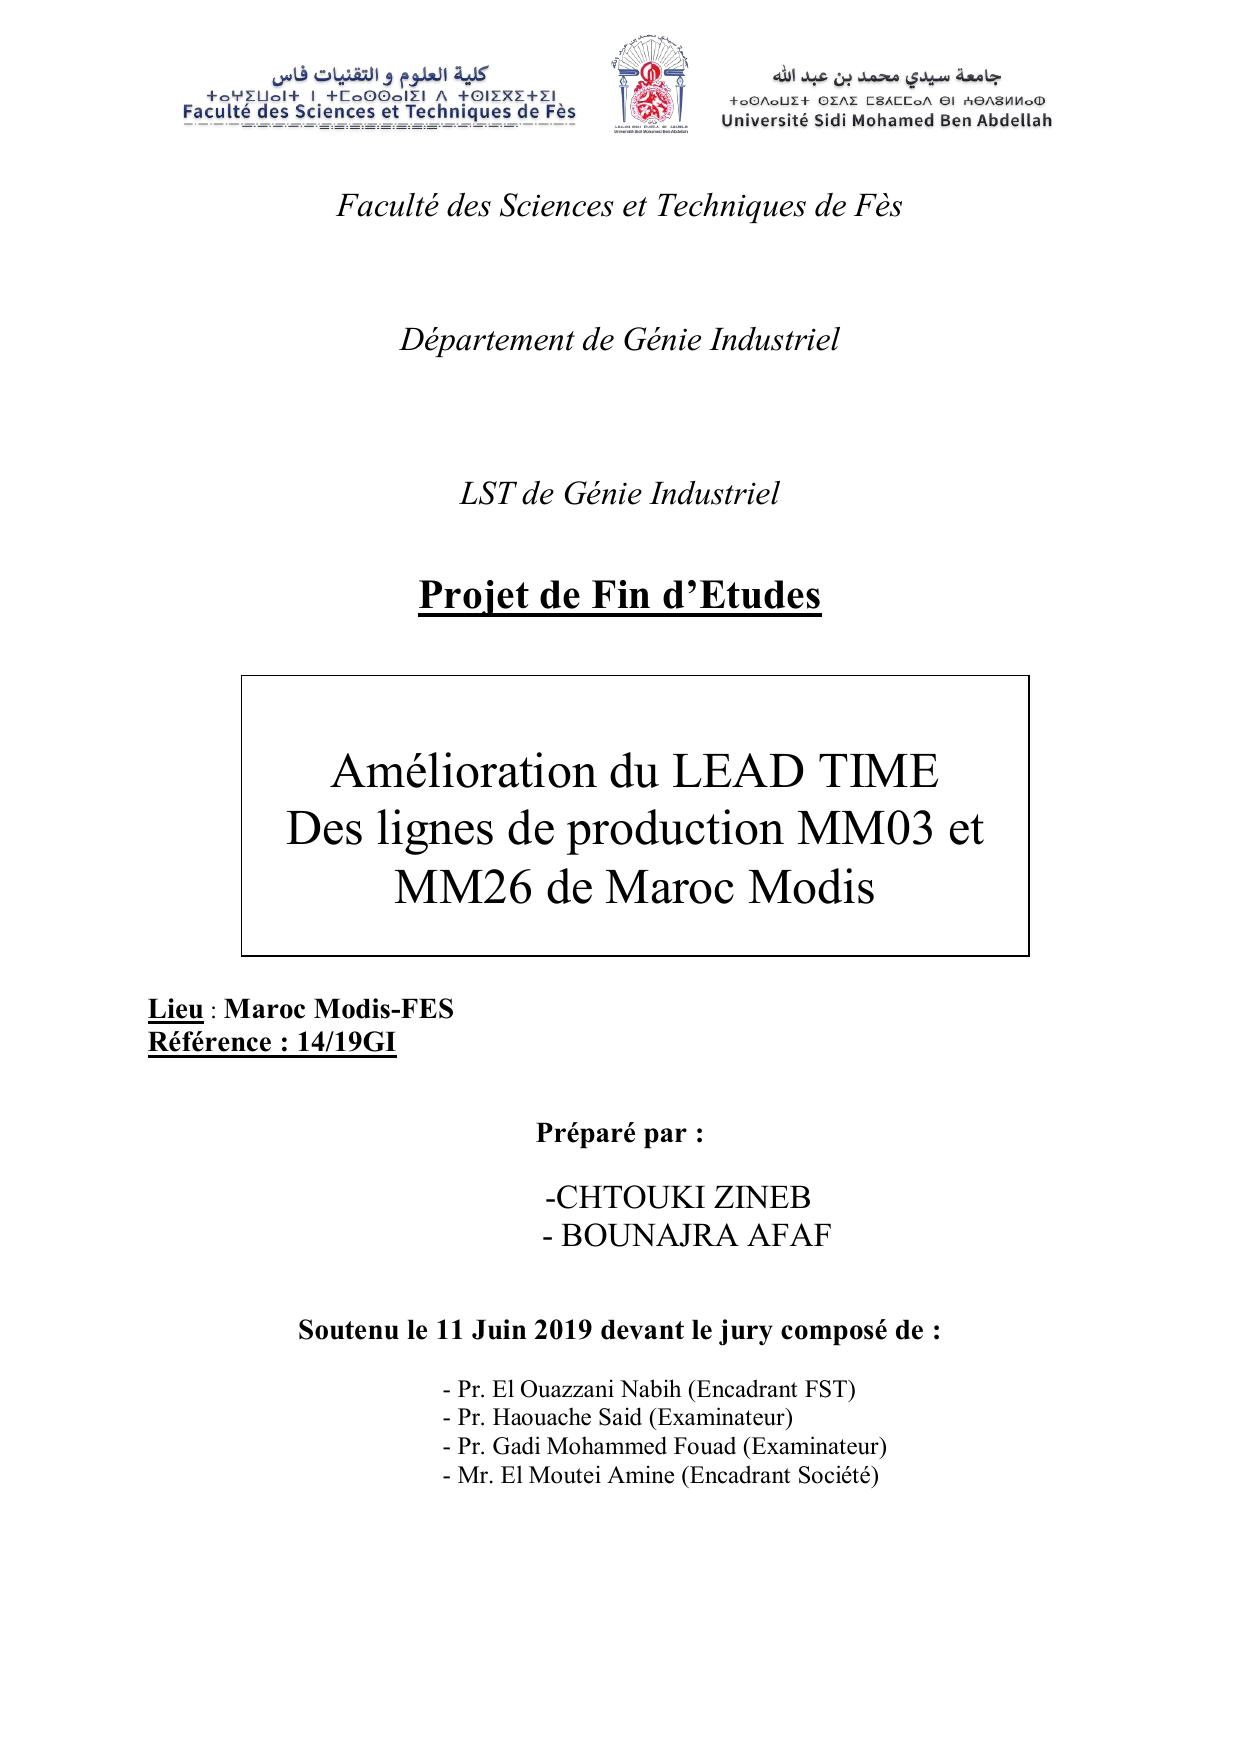 Amélioration du LEAD TIME Des lignes de production MM03 et MM26 de Maroc Modis